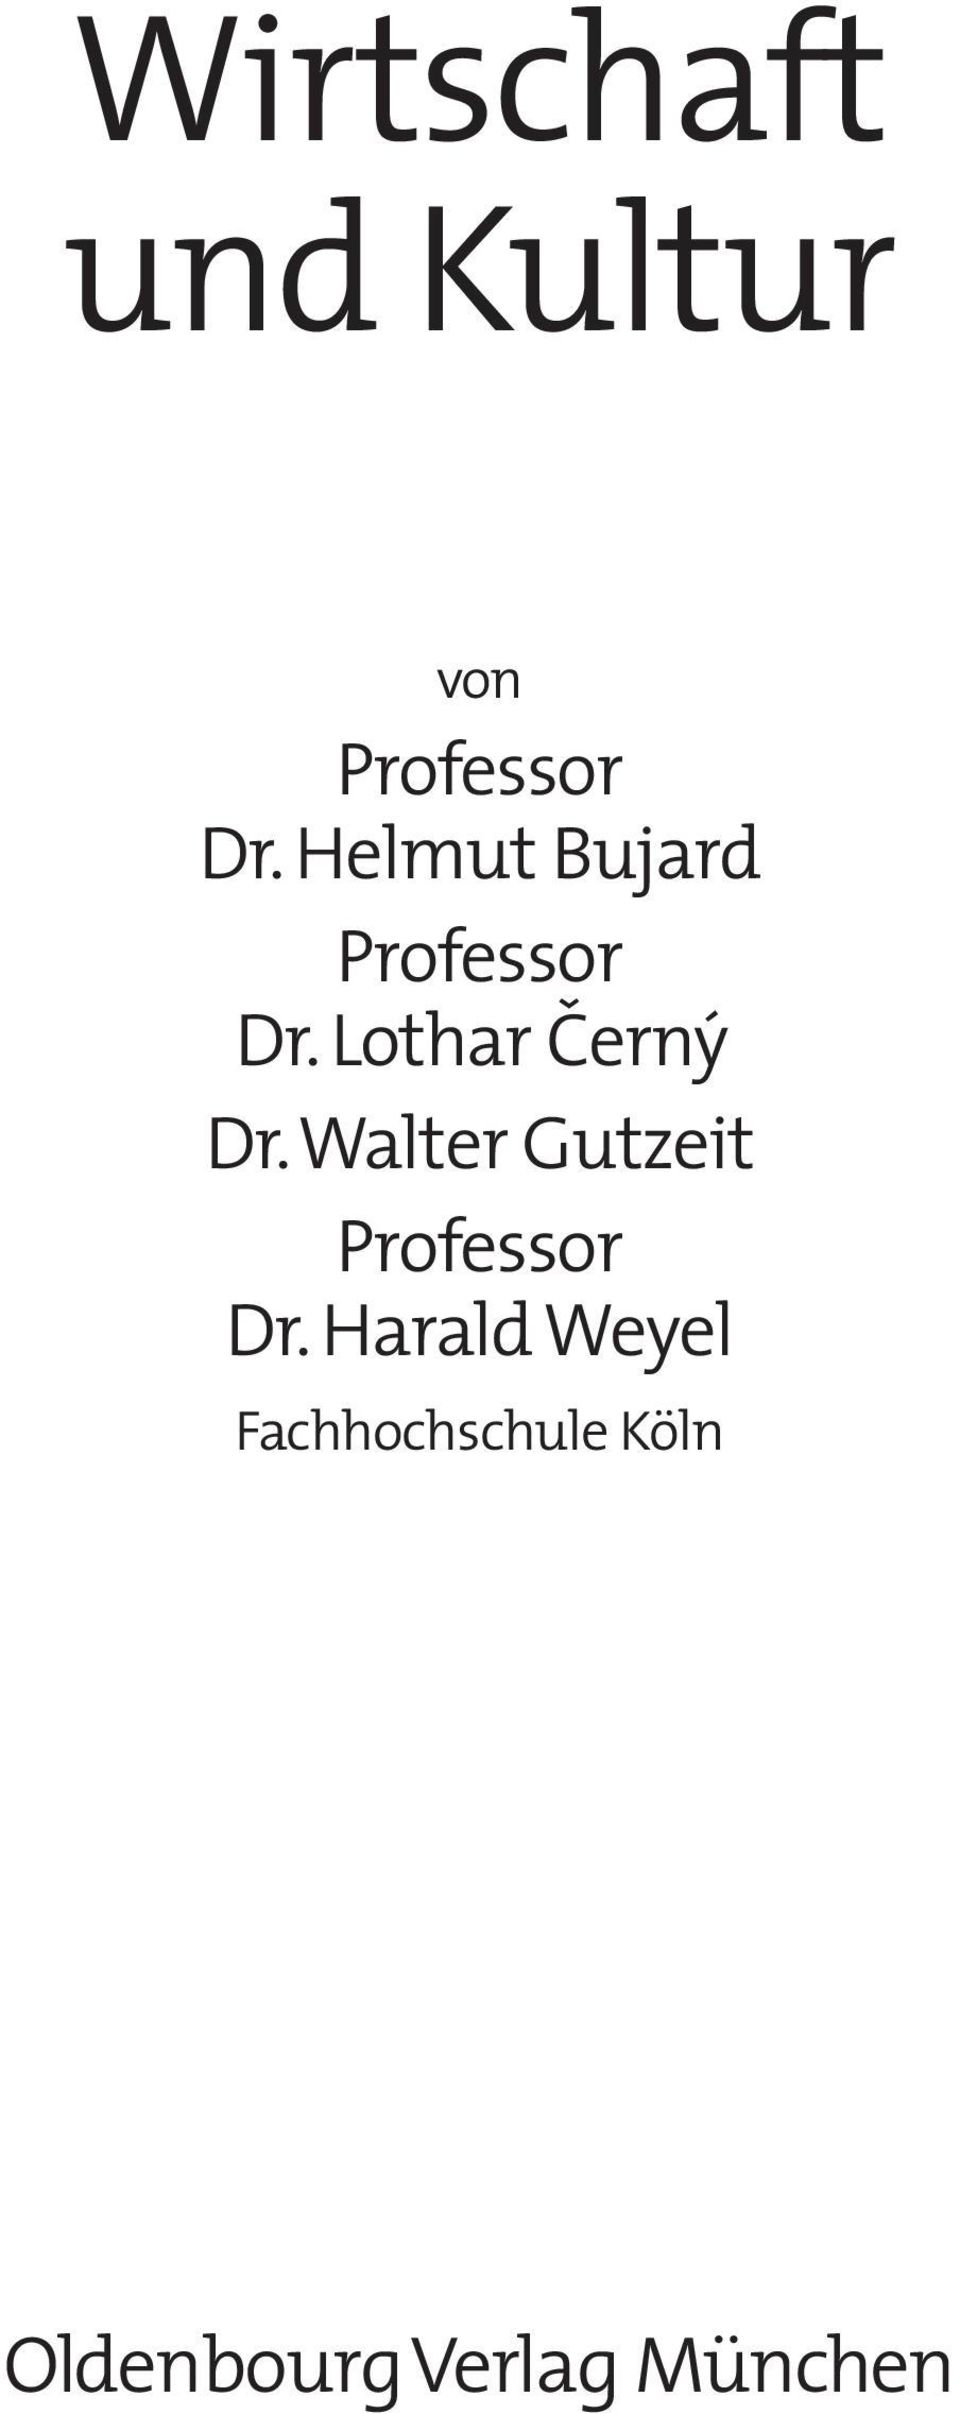 Walter Gutzeit Professor Dr.